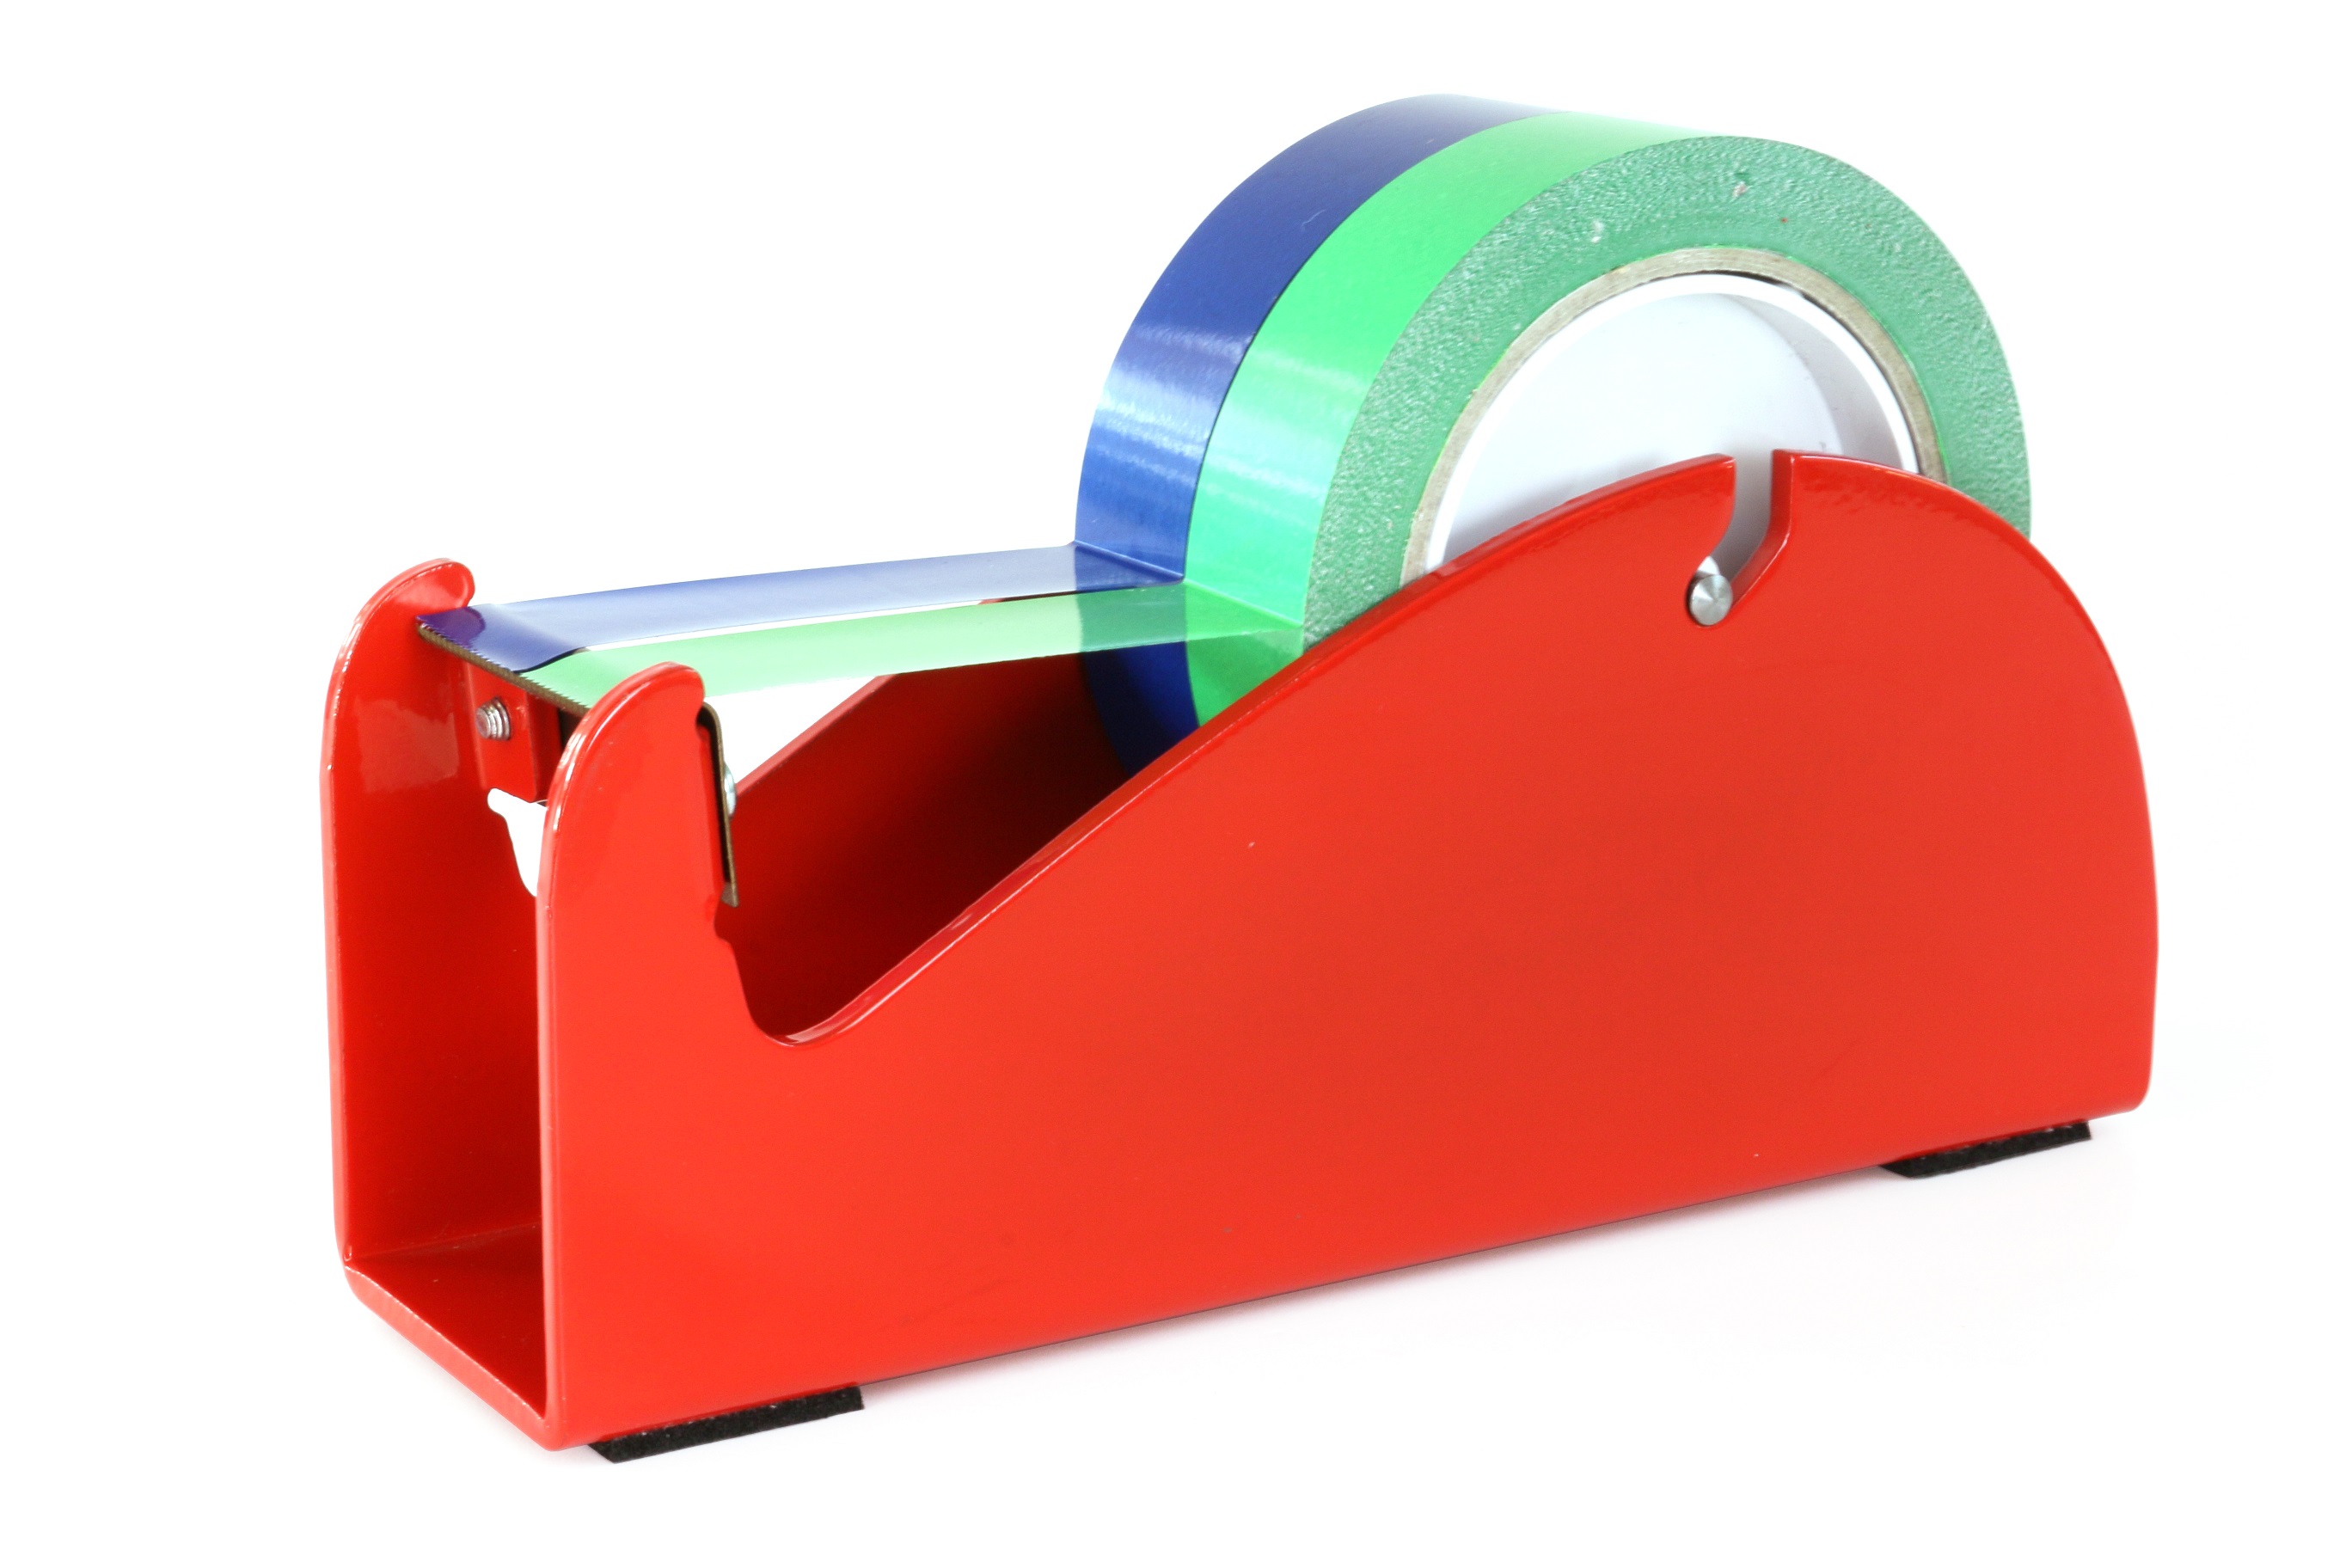 Klebeband-Tischabroller Rot, mit Klemme, für 1-2 Rollen, 2 x 25mm Bandbreite, 145mm Außendurchmesser